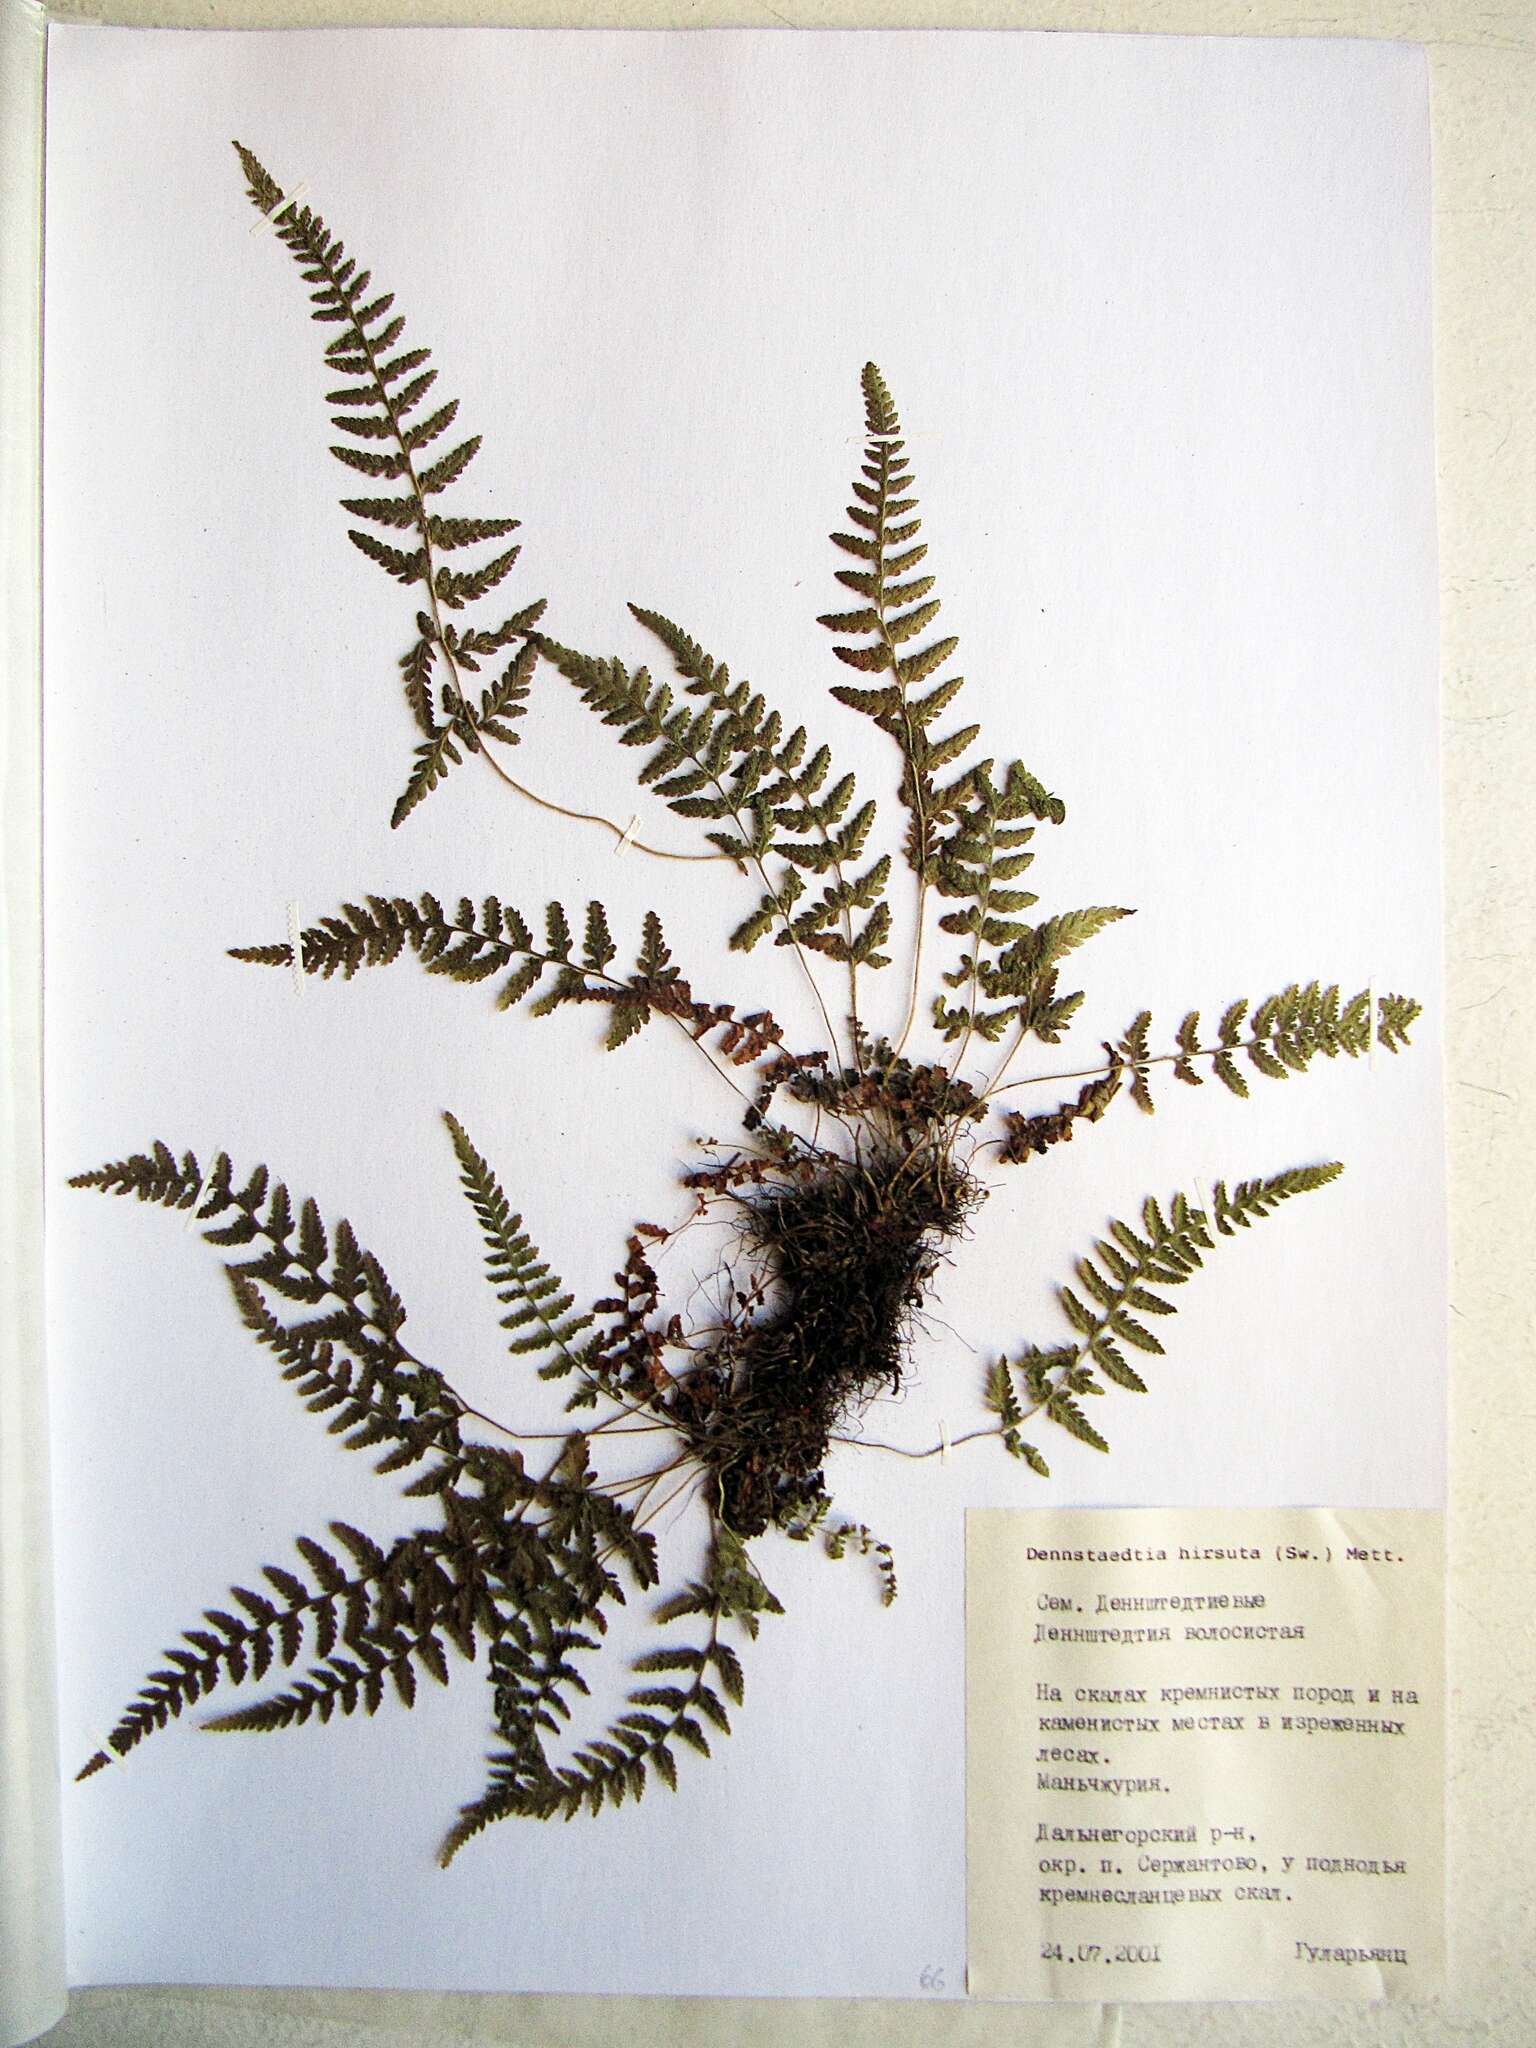 Image of Dennstaedtia hirsuta (Sw.) Mett. ex Miq.